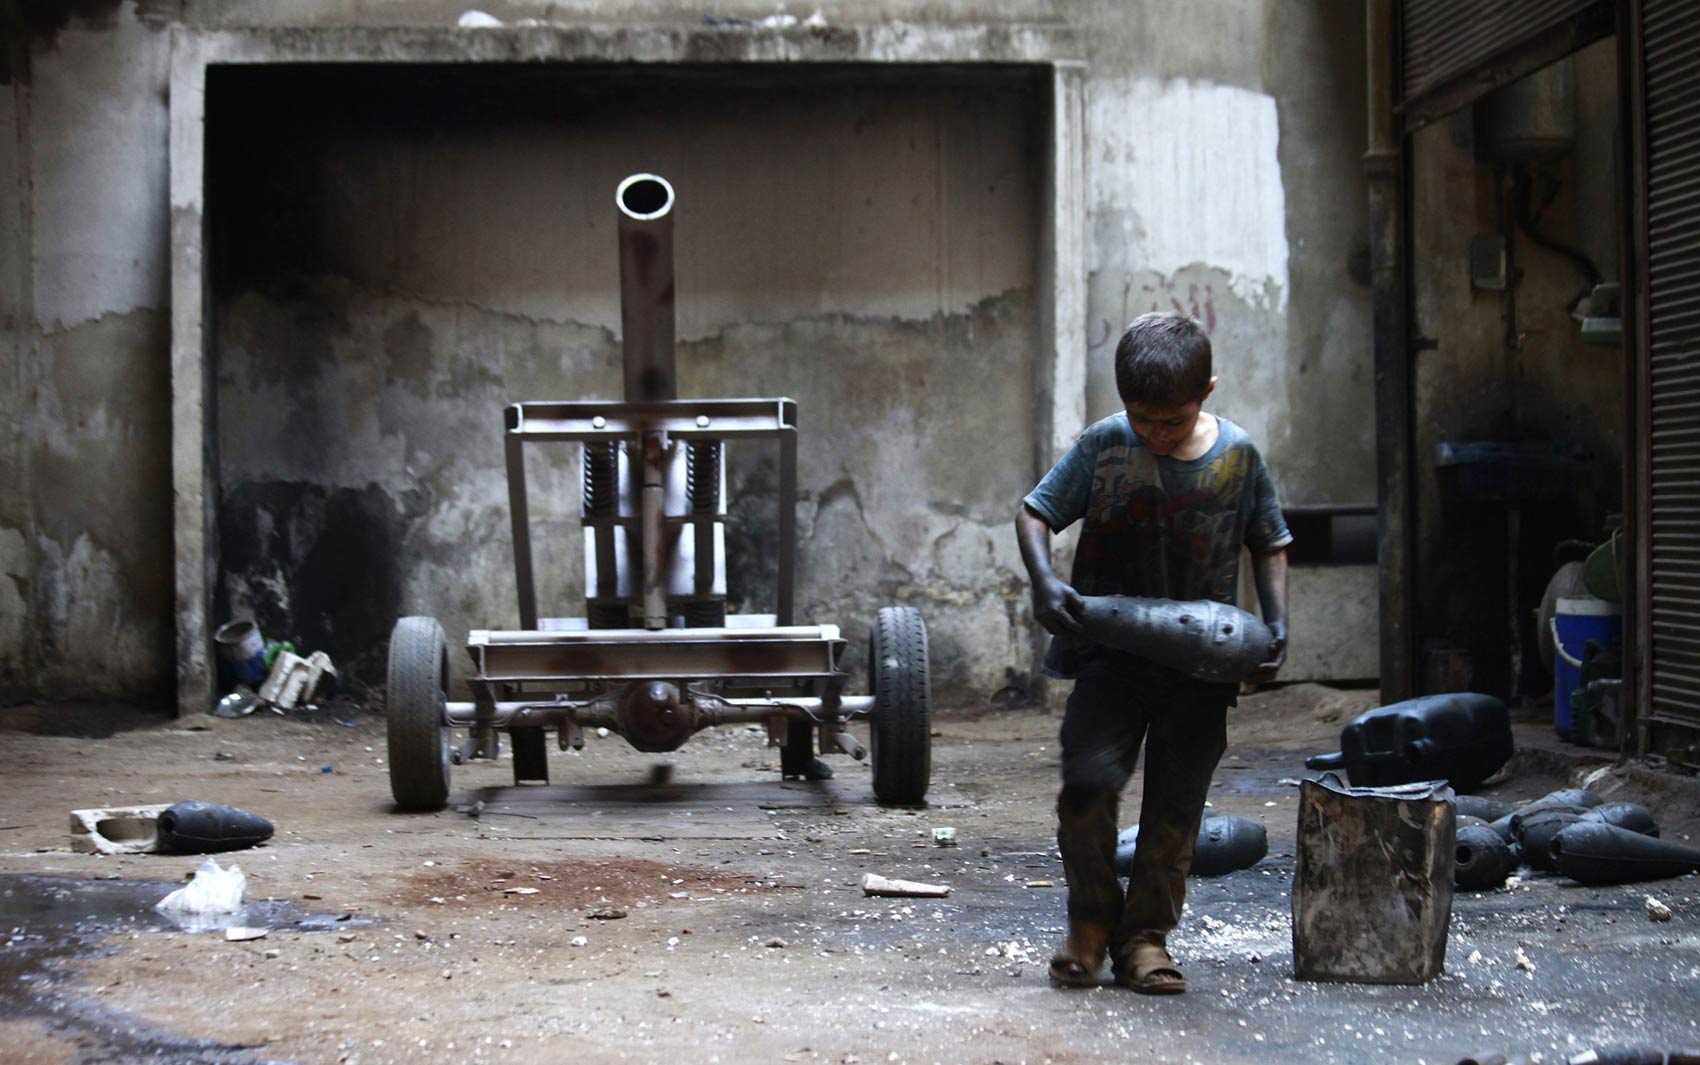 No Comments: Menino sírio de 10 anos ajuda o pai em fábrica rebelde de armas